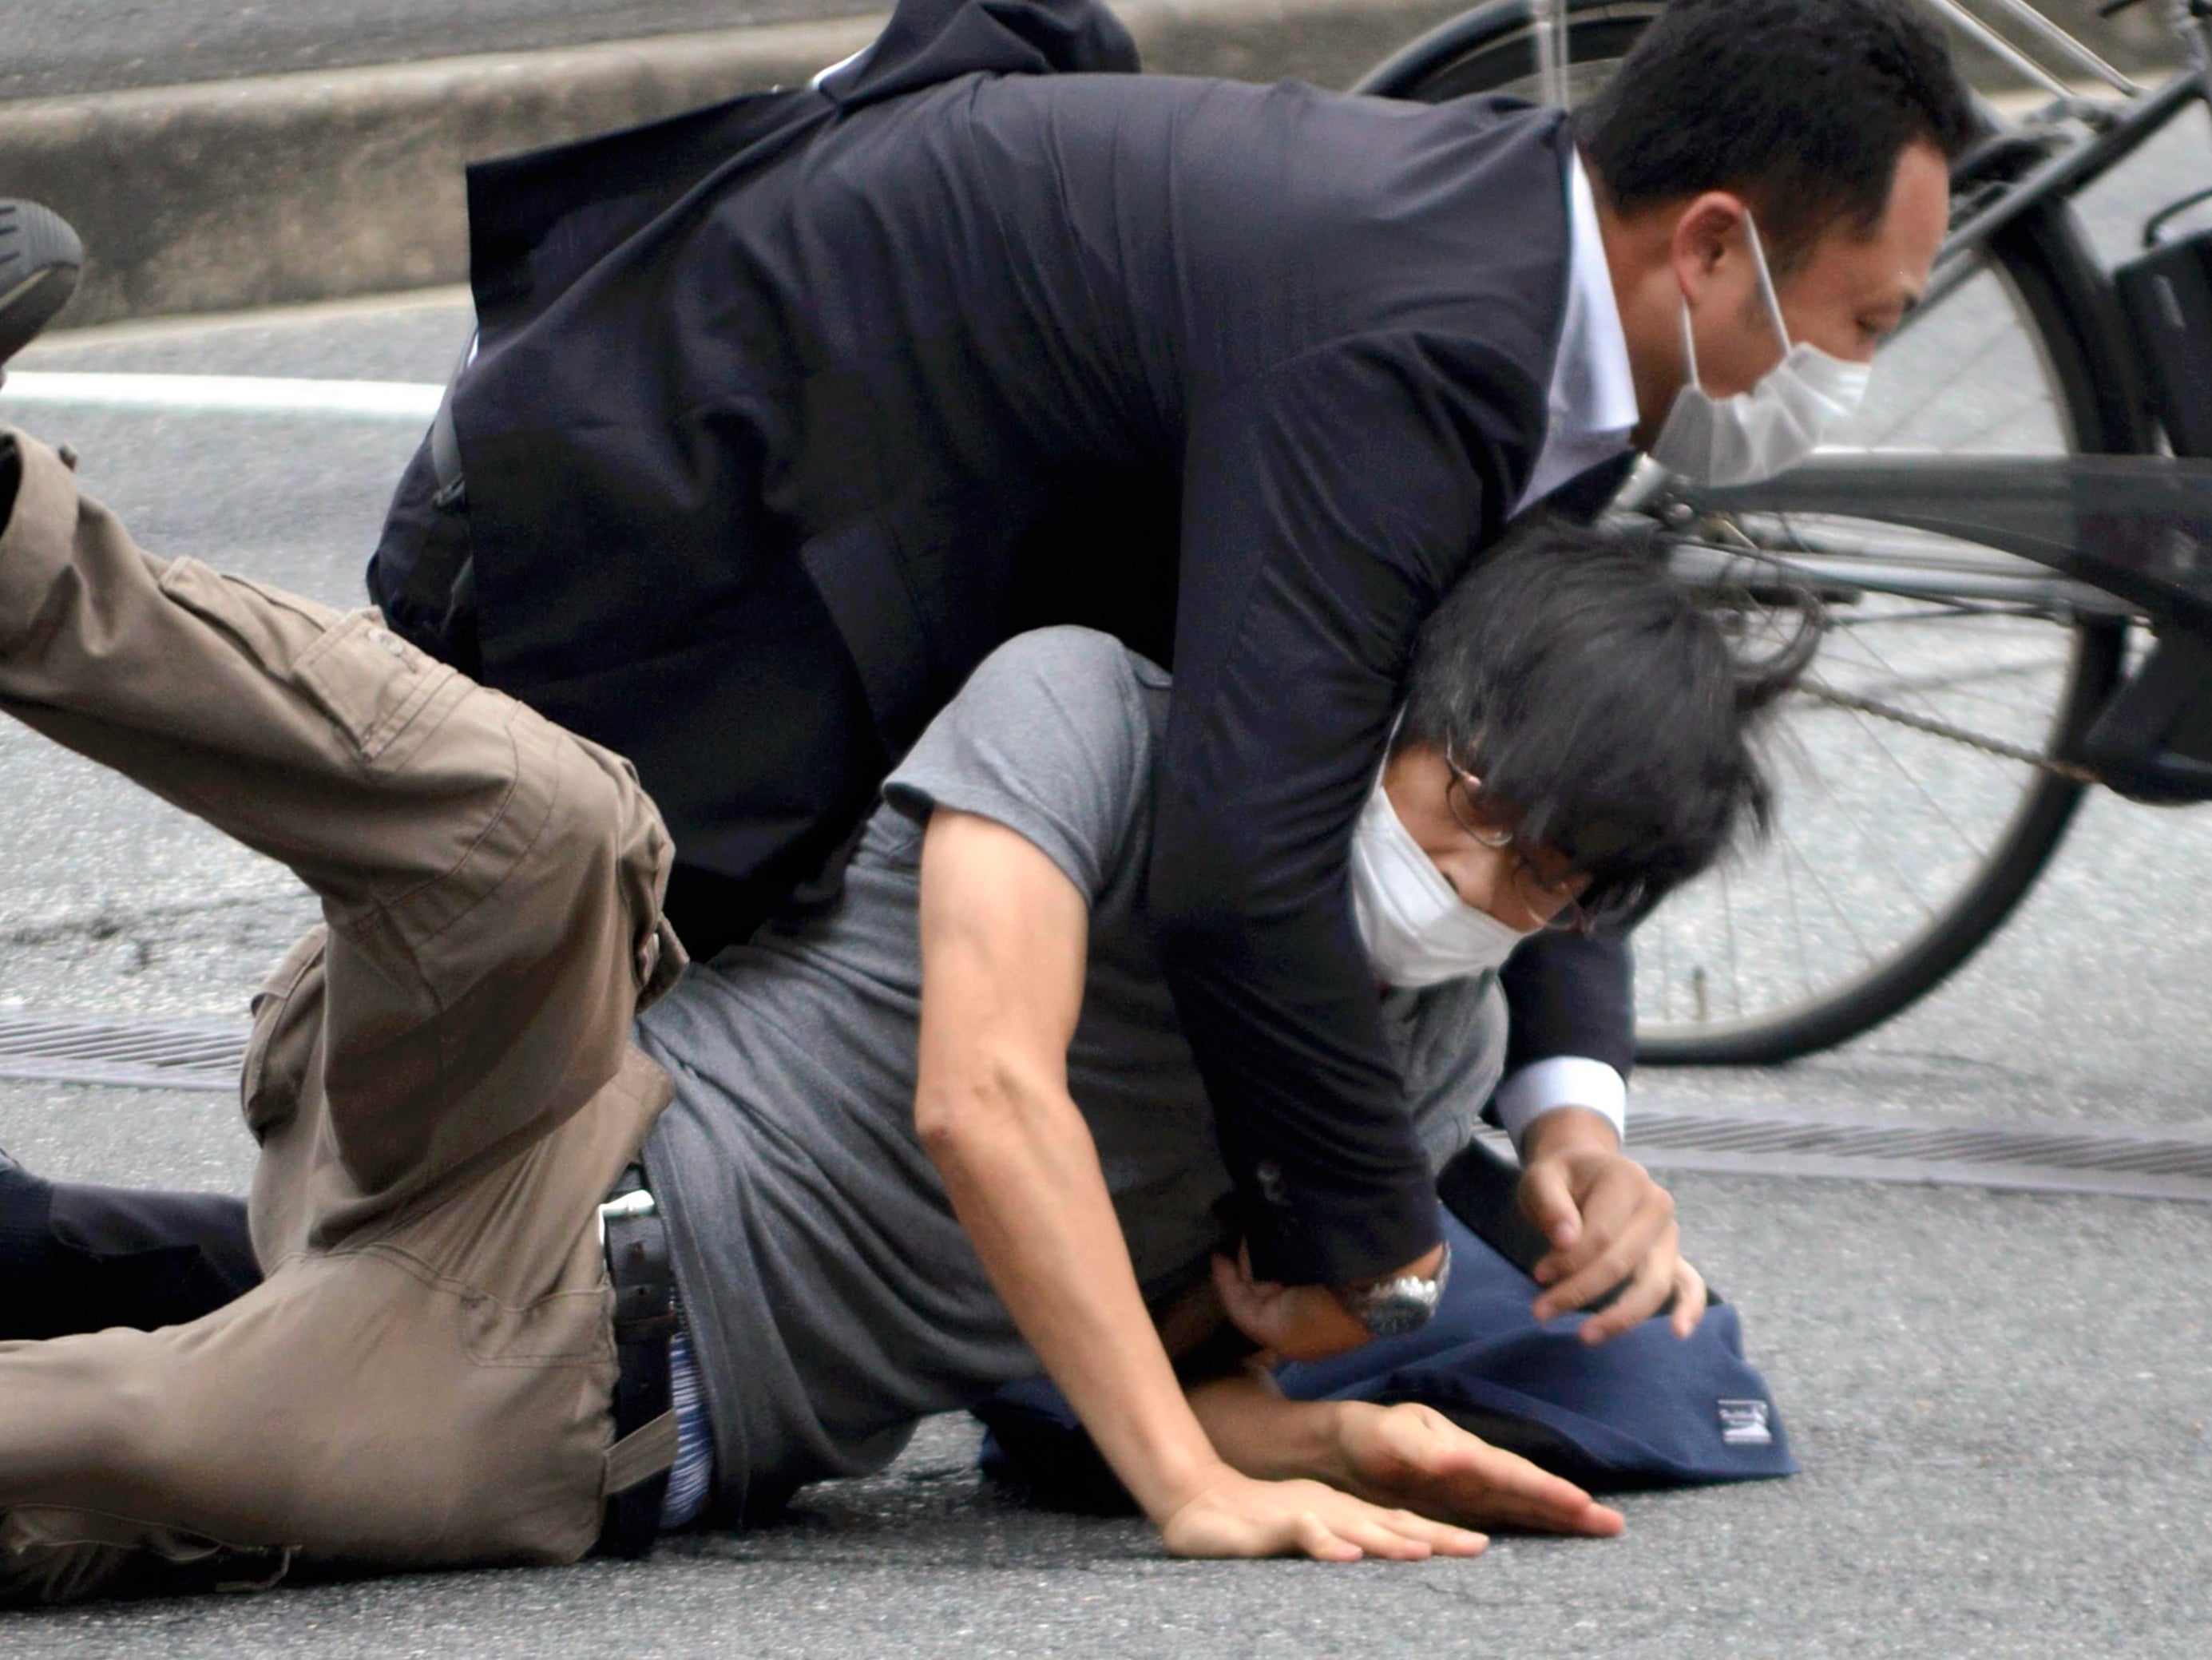 El sospechoso Tetsuya Yamagami es detenido tras el tiroteo contra el ex primer ministro Shinzo Abe en la prefectura de Nara, al oeste de Japón, el viernes 8 de julio